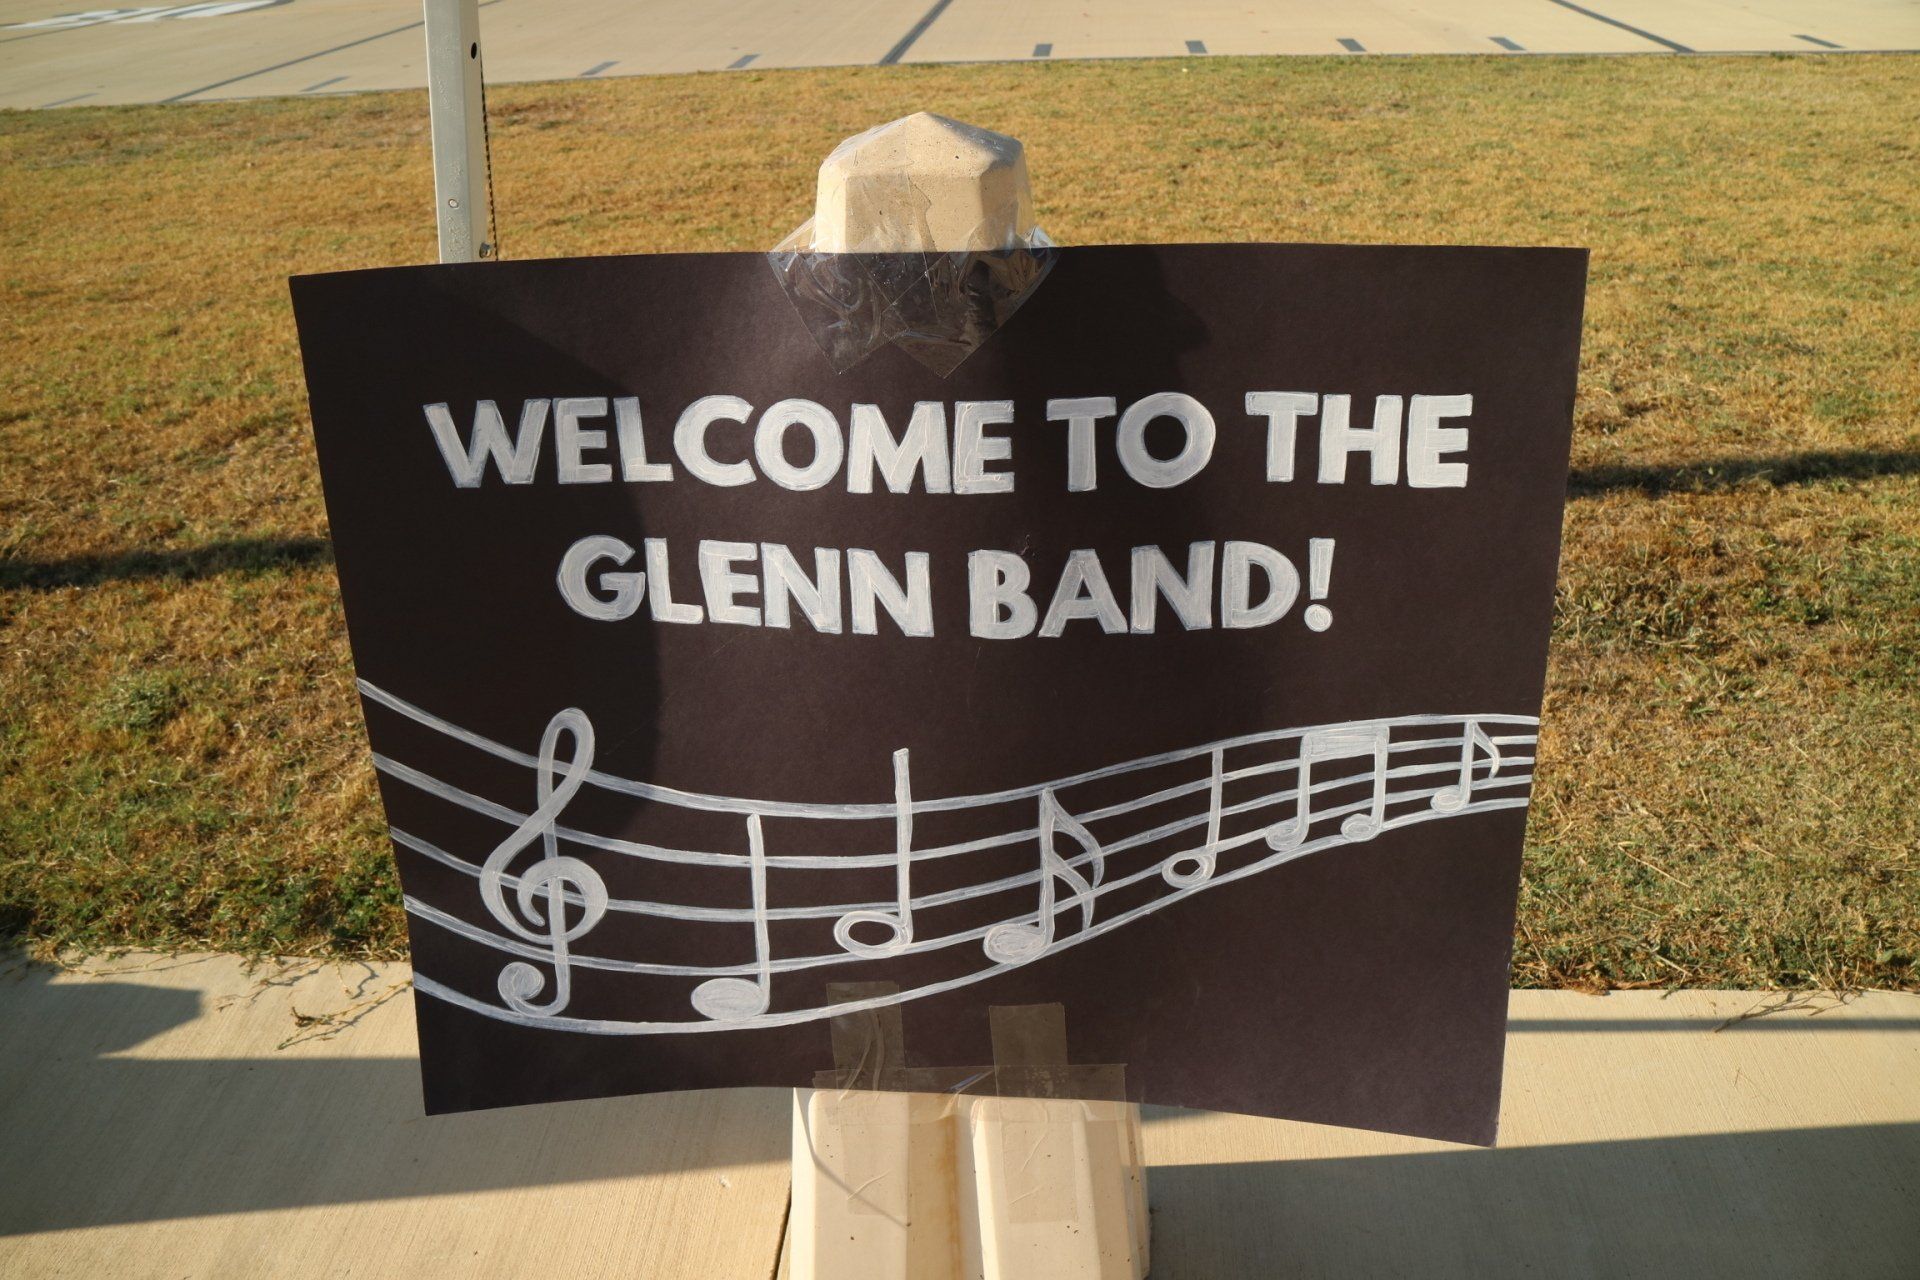 Welcome to Glenn band image